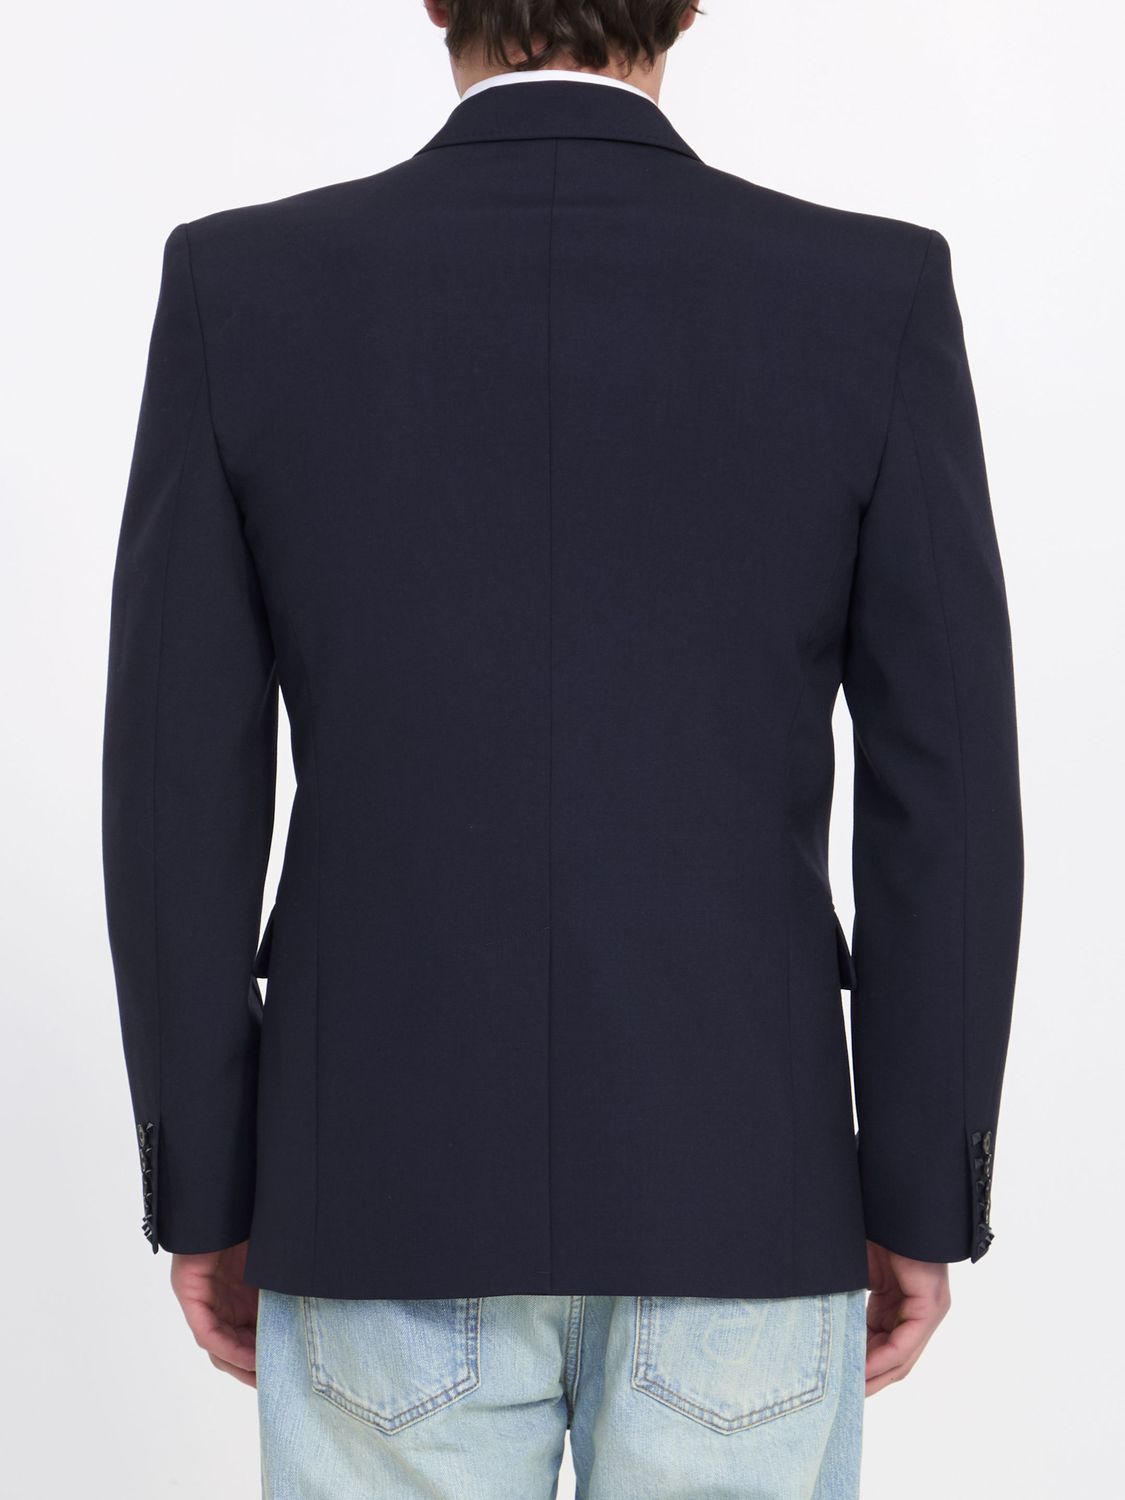 VALENTINO GARAVANI Men's Navy Single-Breasted Jacket - Regular Fit